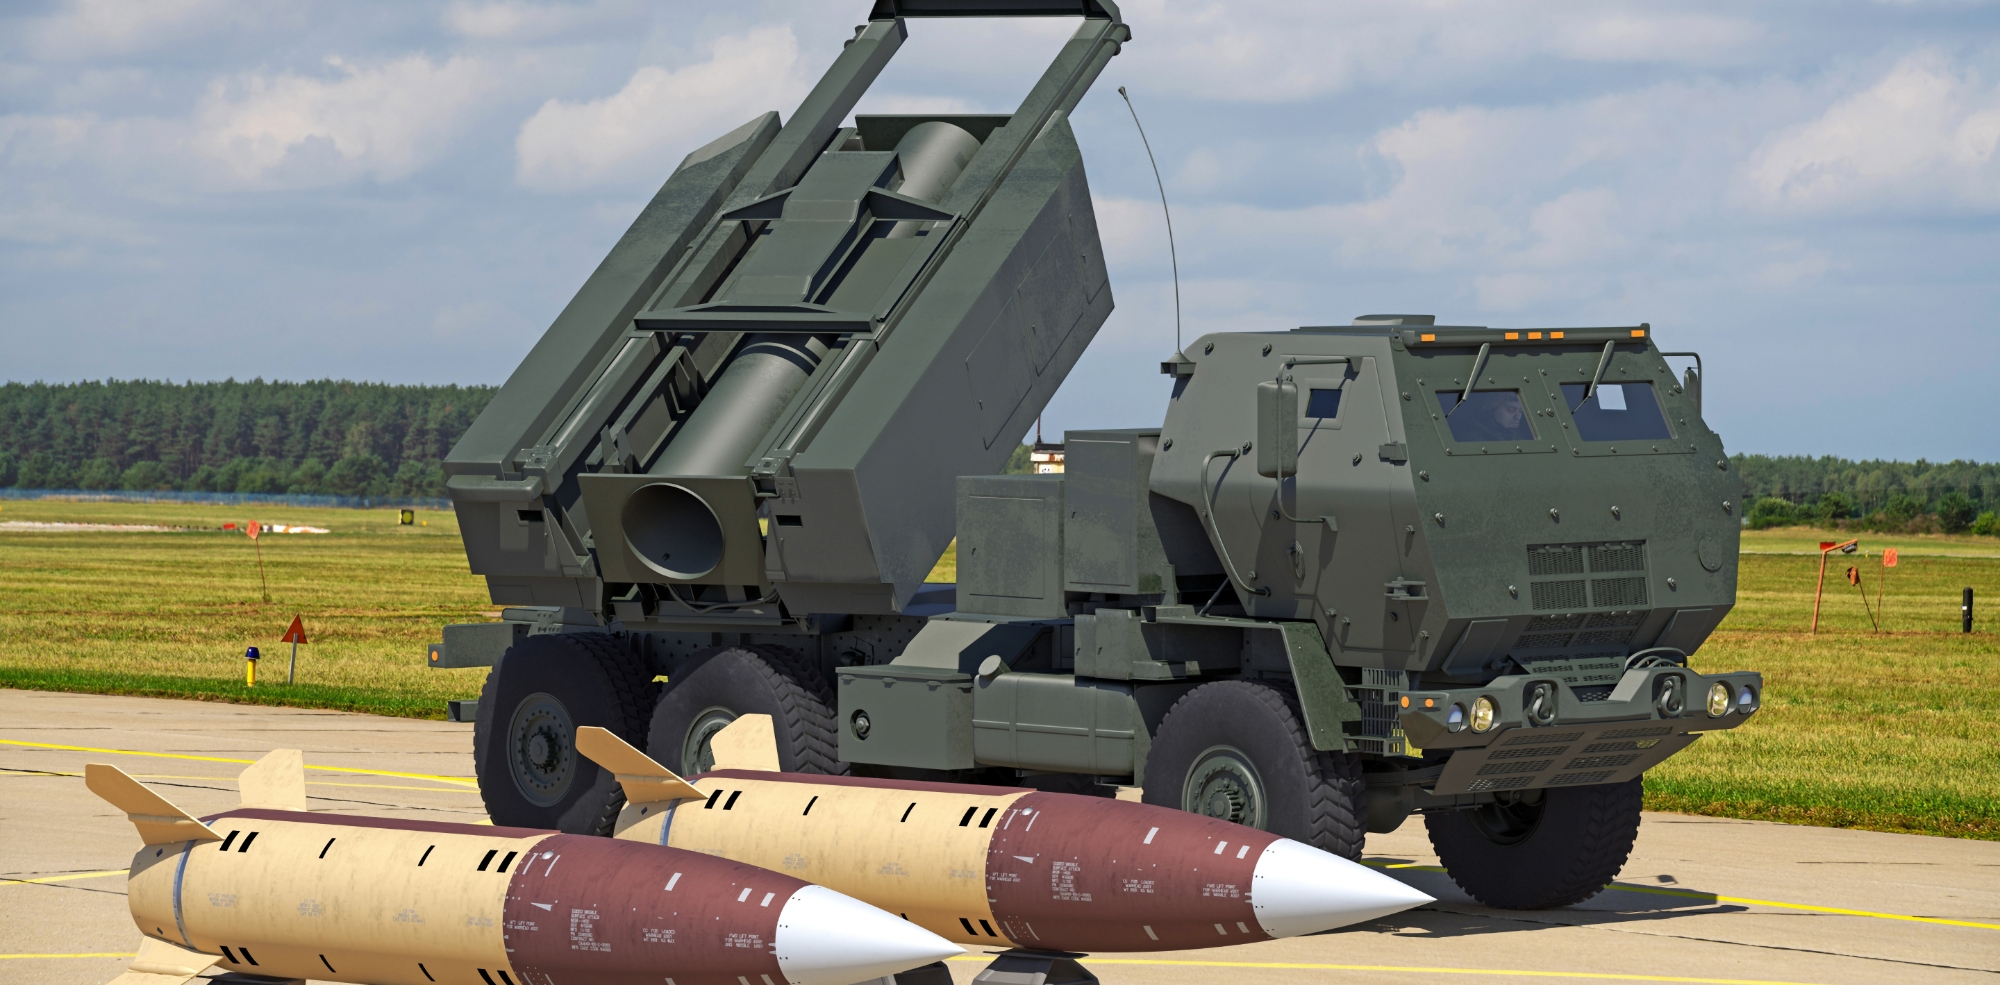 Kontrakt o wartości ponad 200 000 000 dolarów: Estonia kupuje wieloprowadnicowe wyrzutnie rakietowe HIMARS z pociskami balistycznymi ATACMS firmy Lockheed Martin, które mogą trafiać w cele oddalone nawet o 300 km